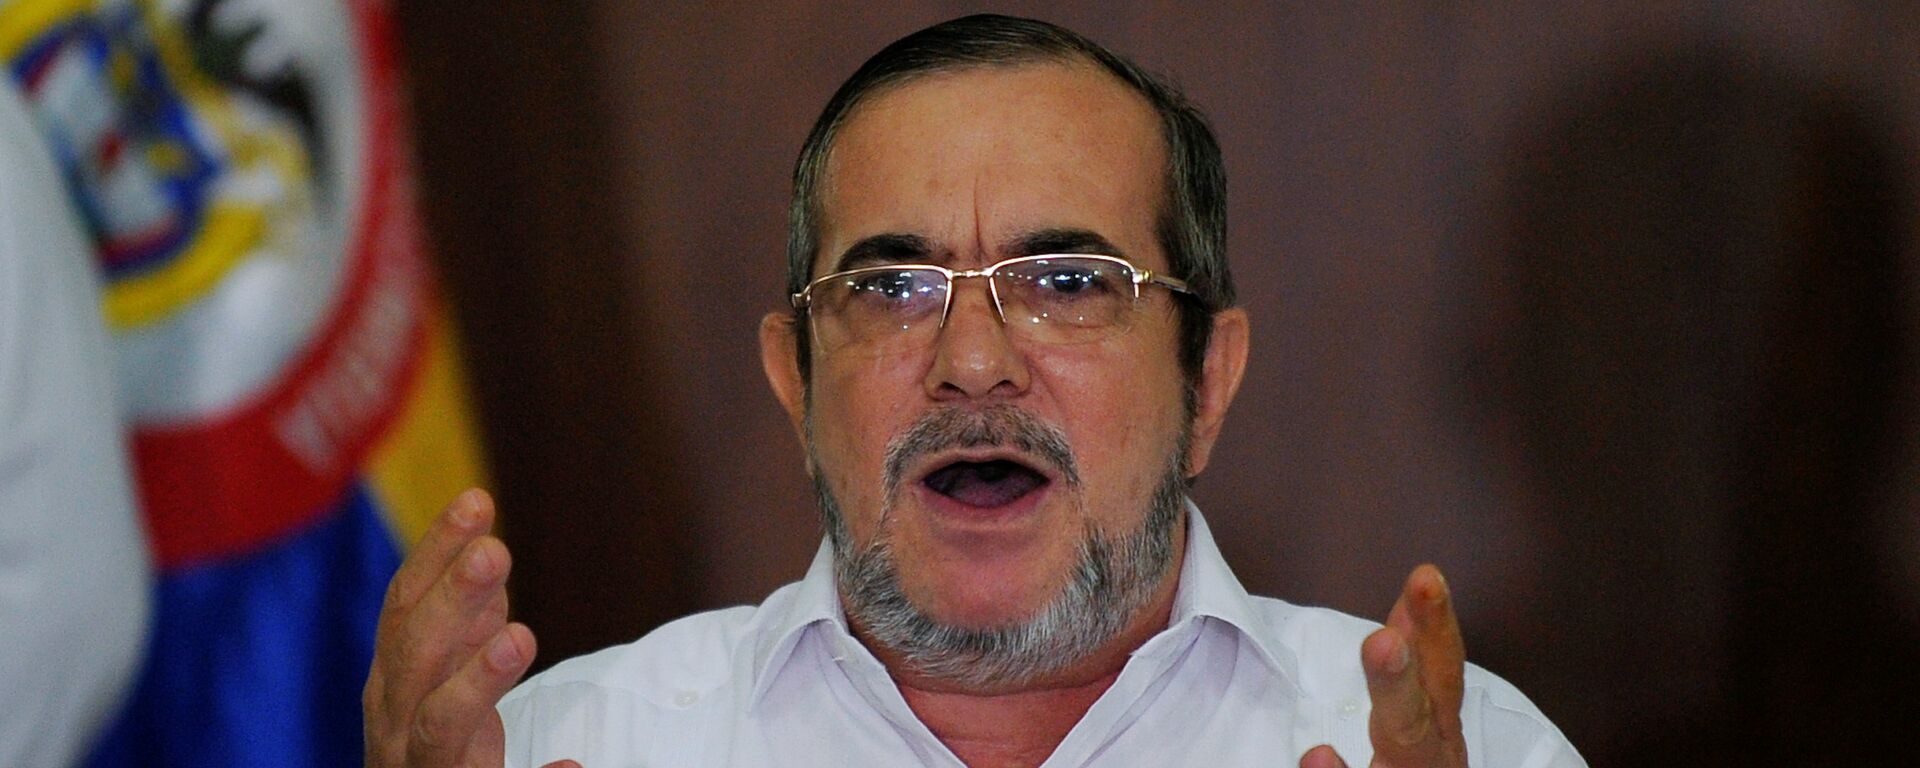 Rodrigo Londoño, alias 'Timochenko', el líder del partido colombiano FARC  - Sputnik Mundo, 1920, 03.02.2021